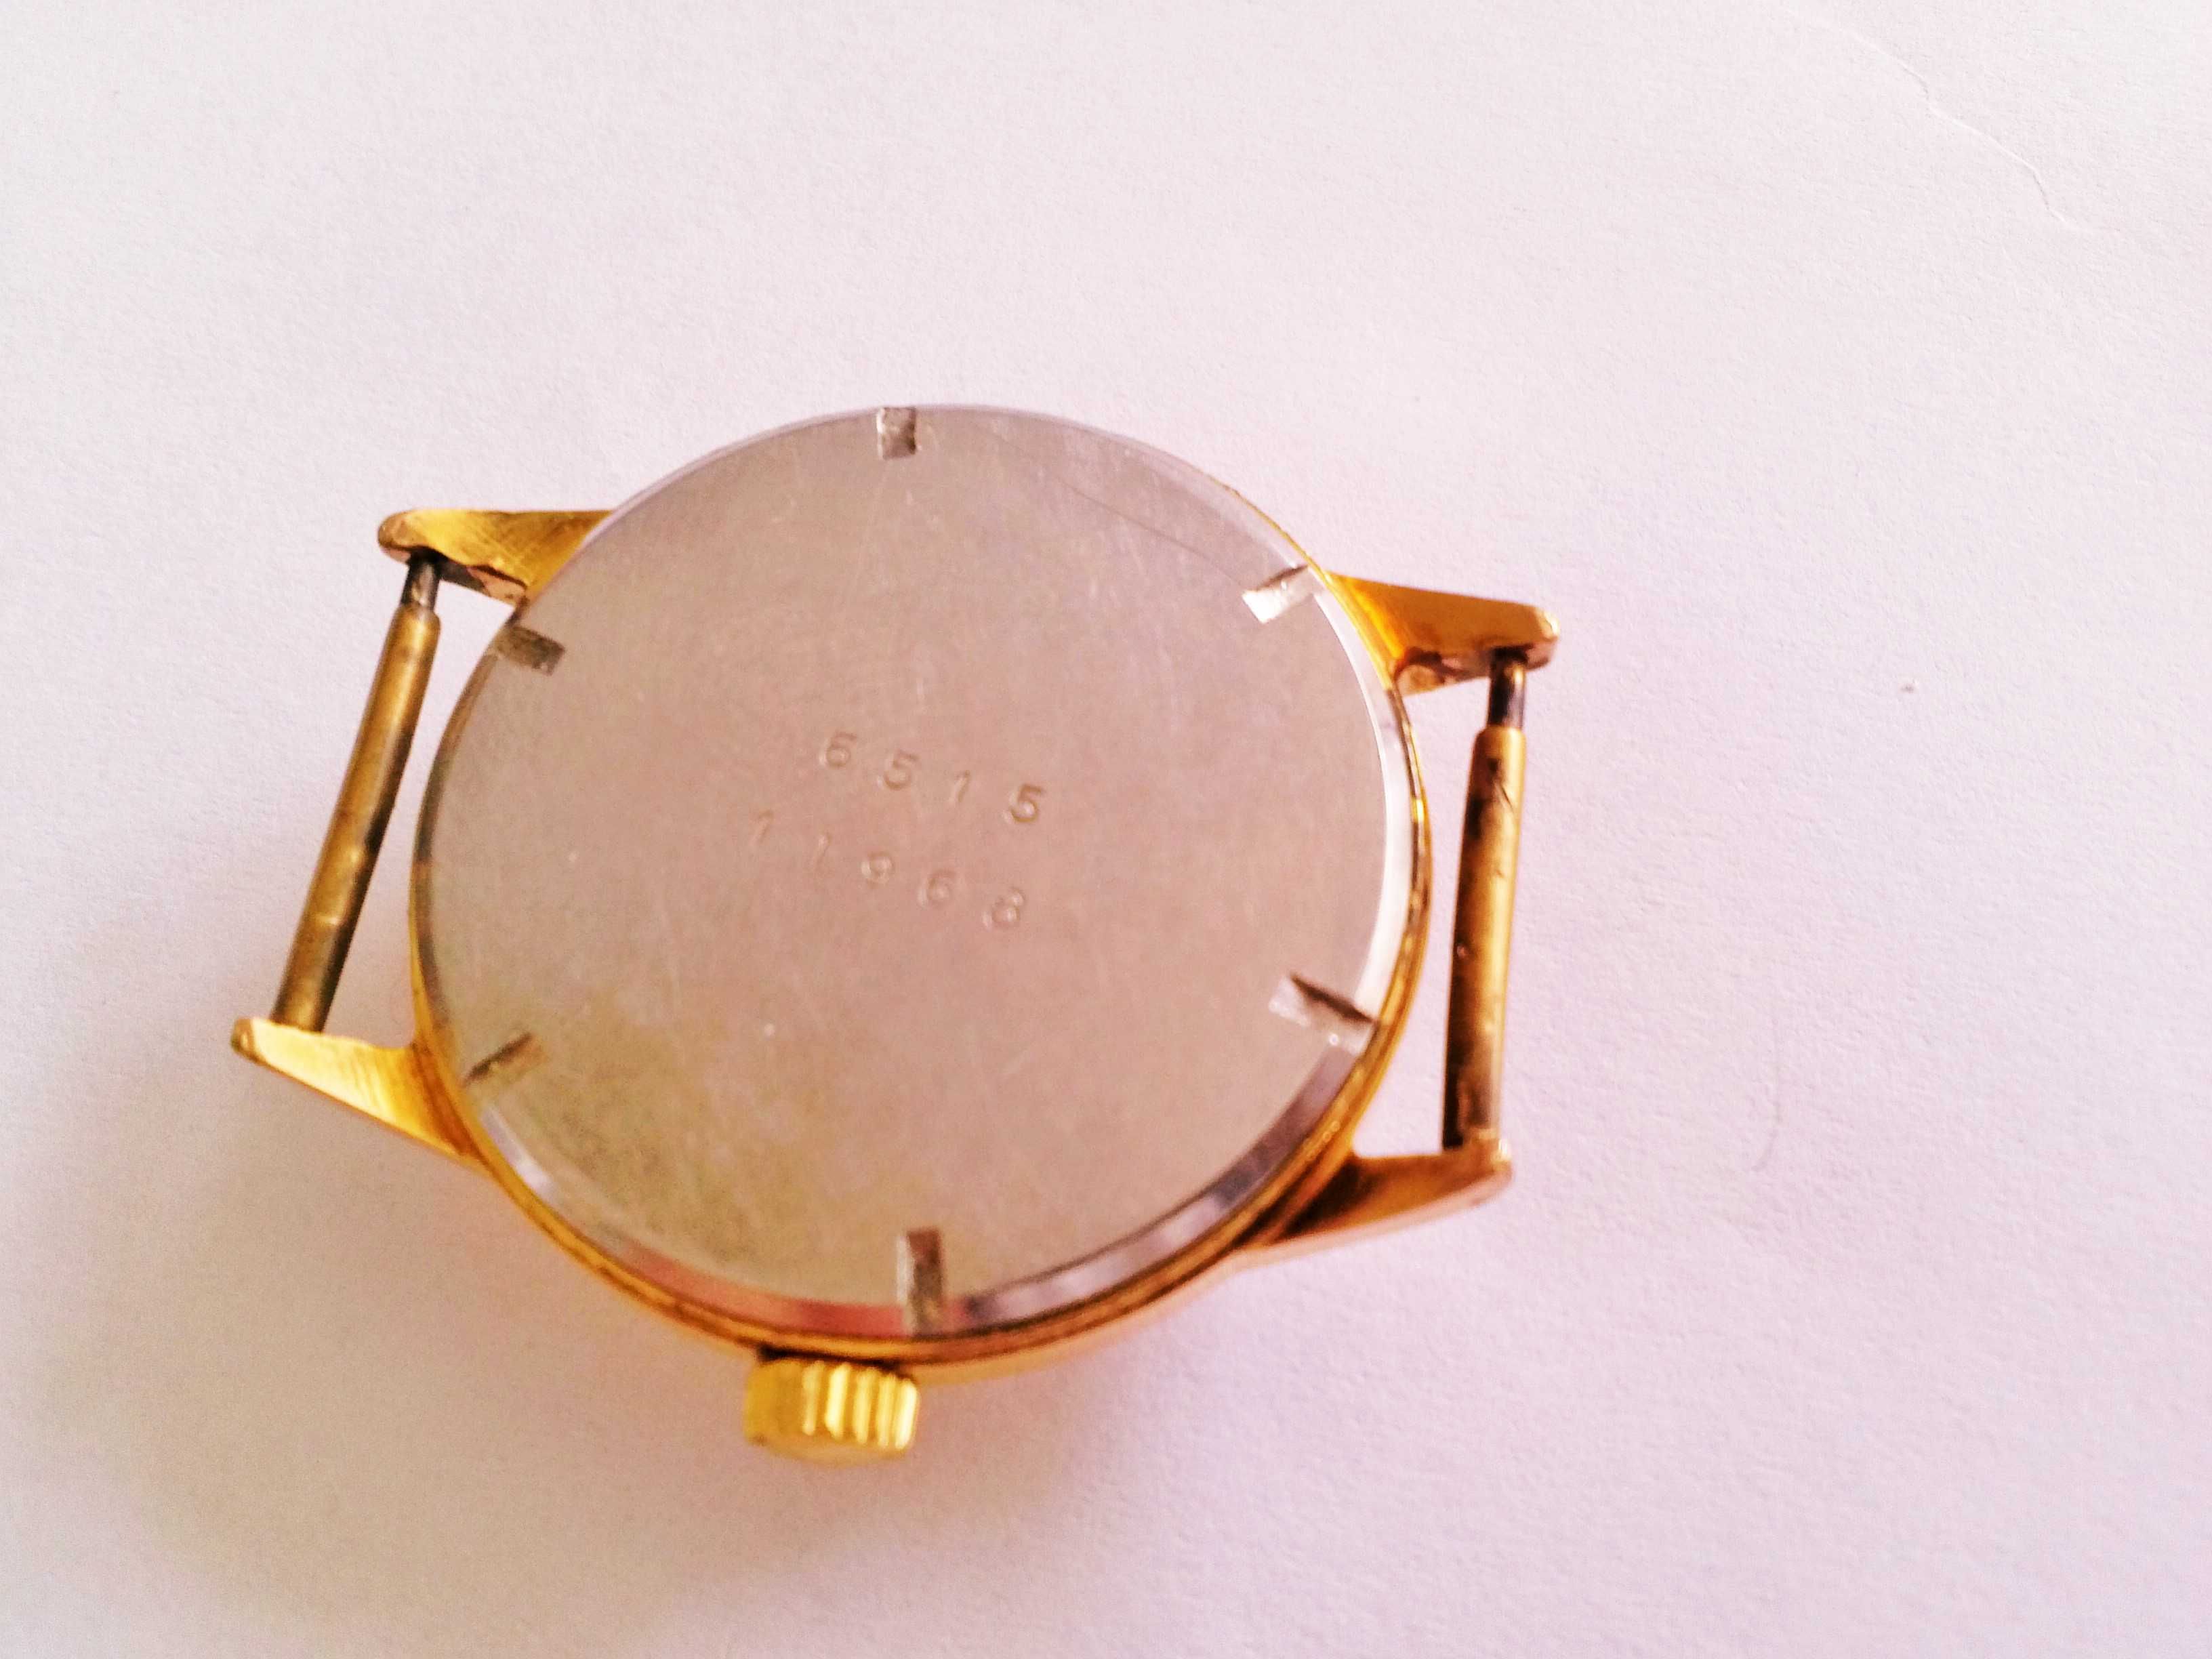 Zegarek naręczny męski marki DAUPHINE złocony 18K złotem sprawny